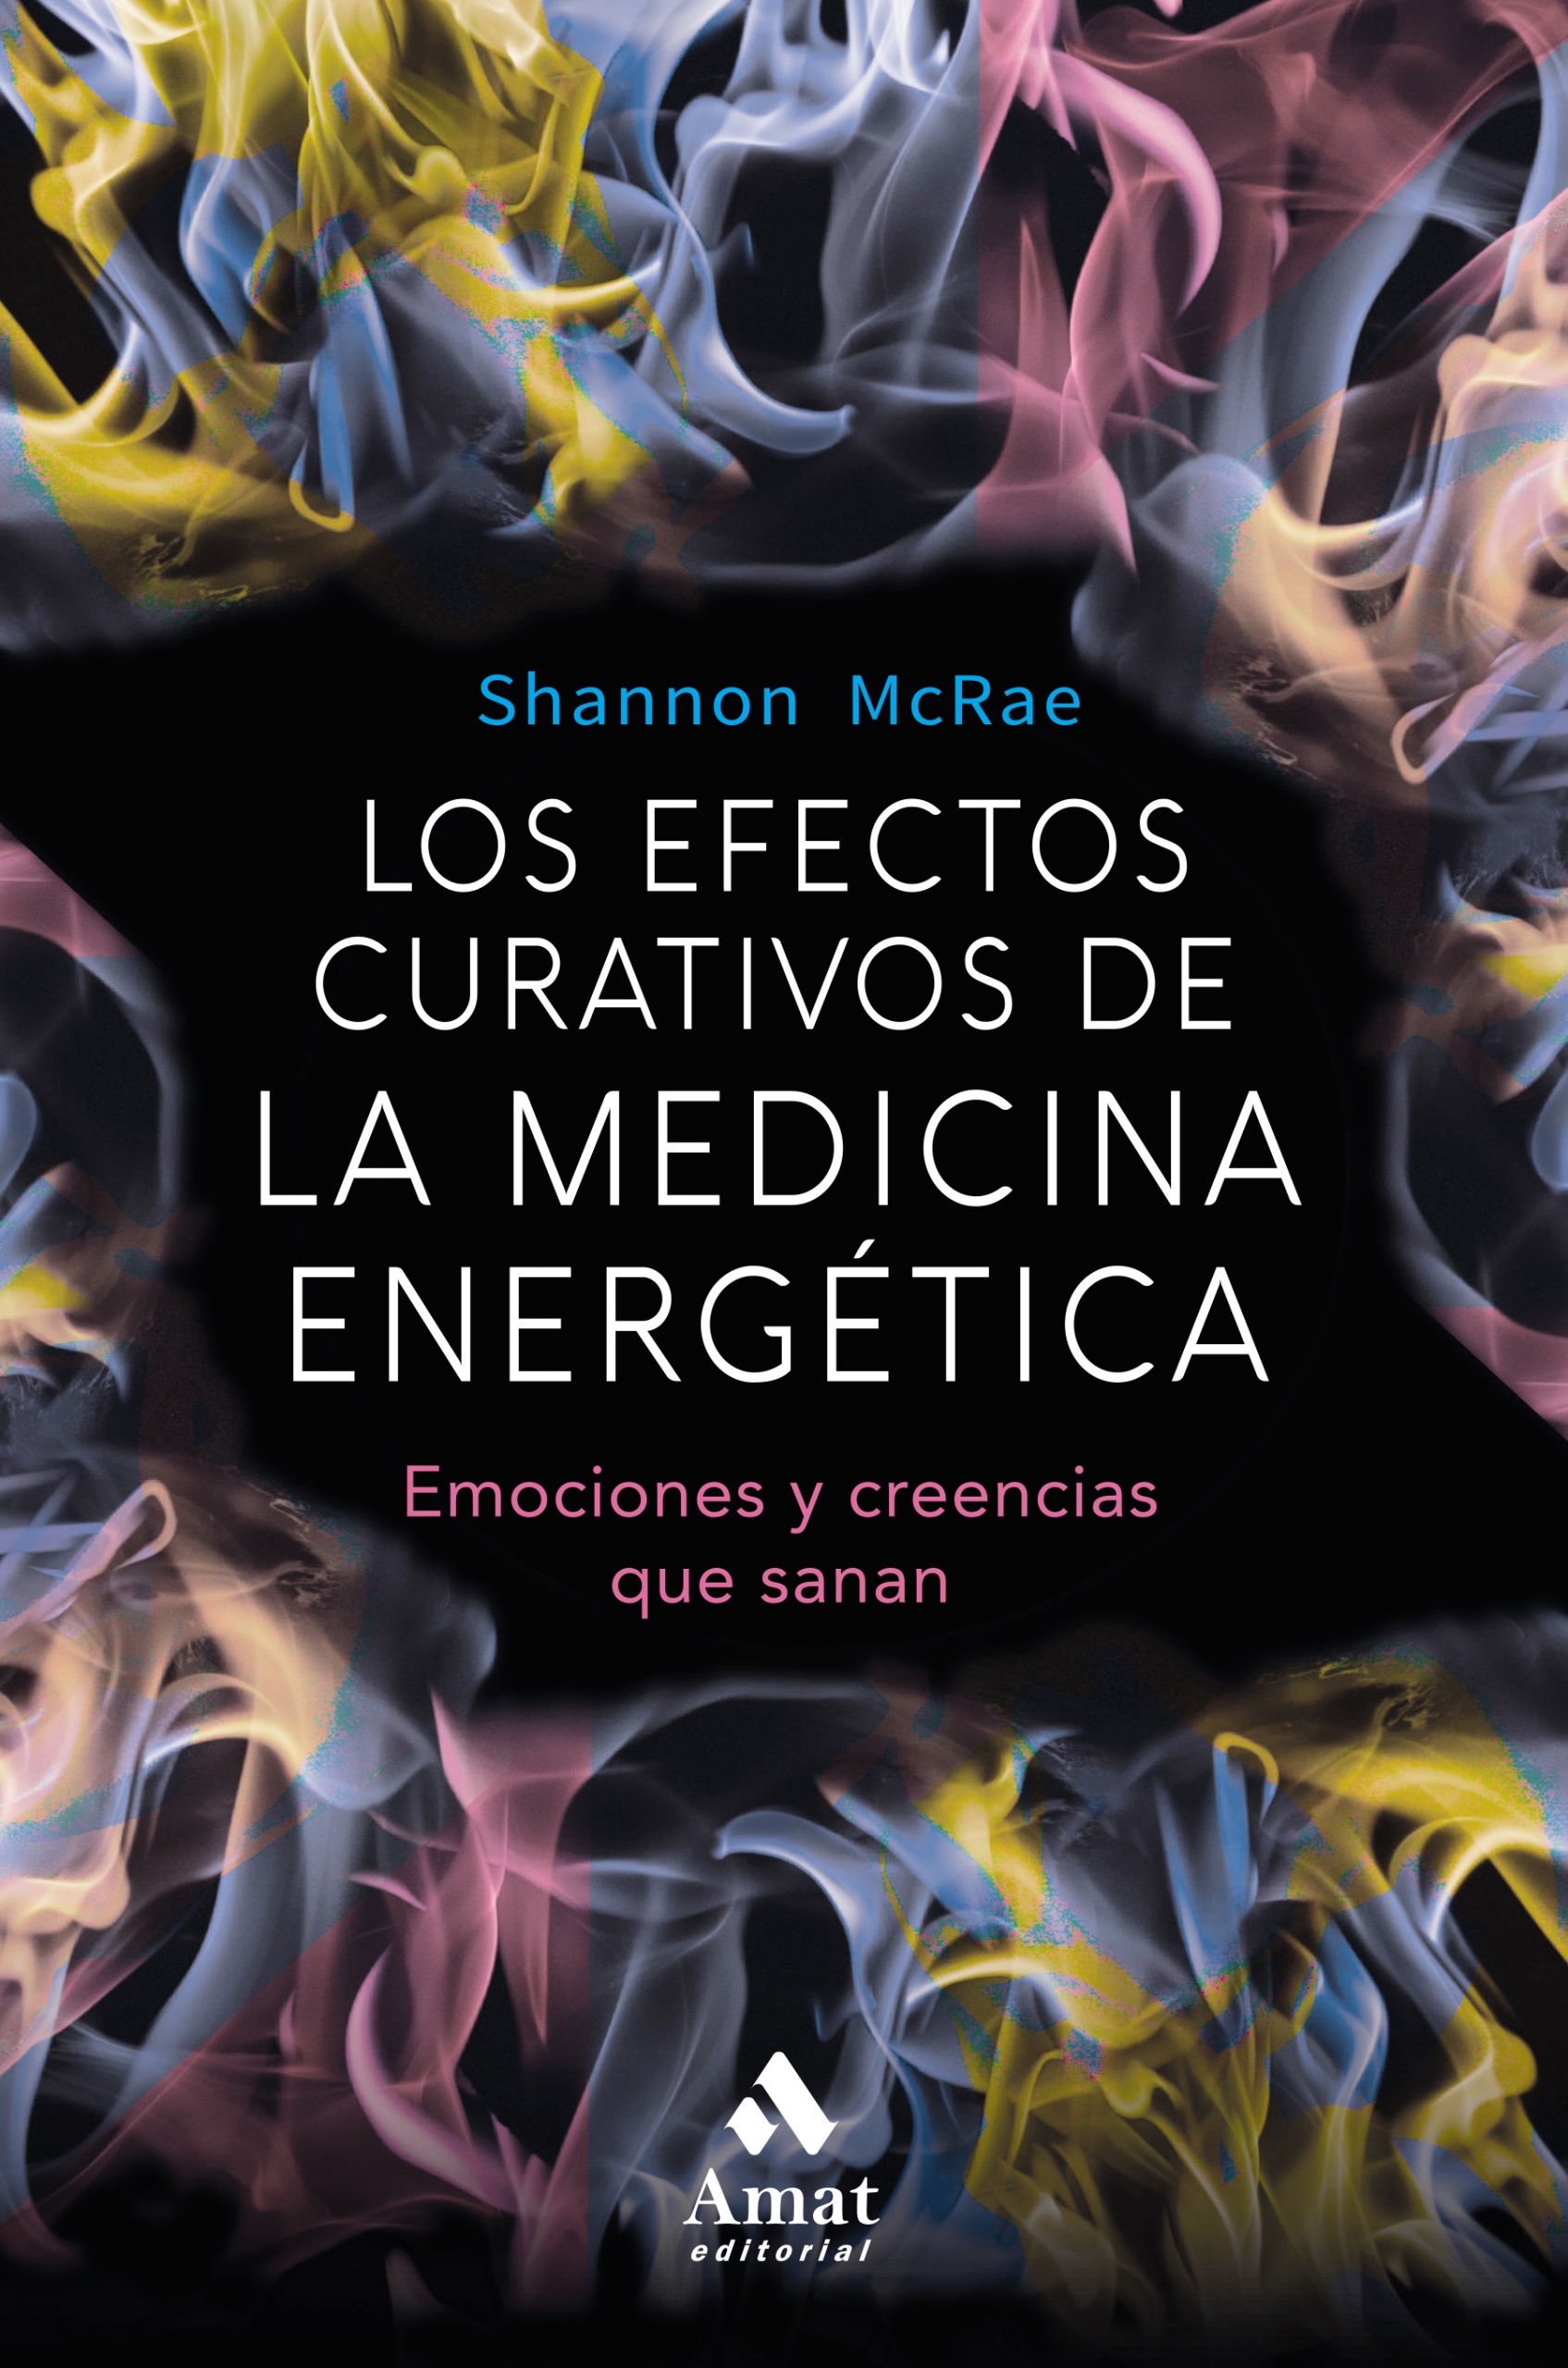 Los efectos curativos de la medicina energética | Shannon McRae | Libros para vivir mejor